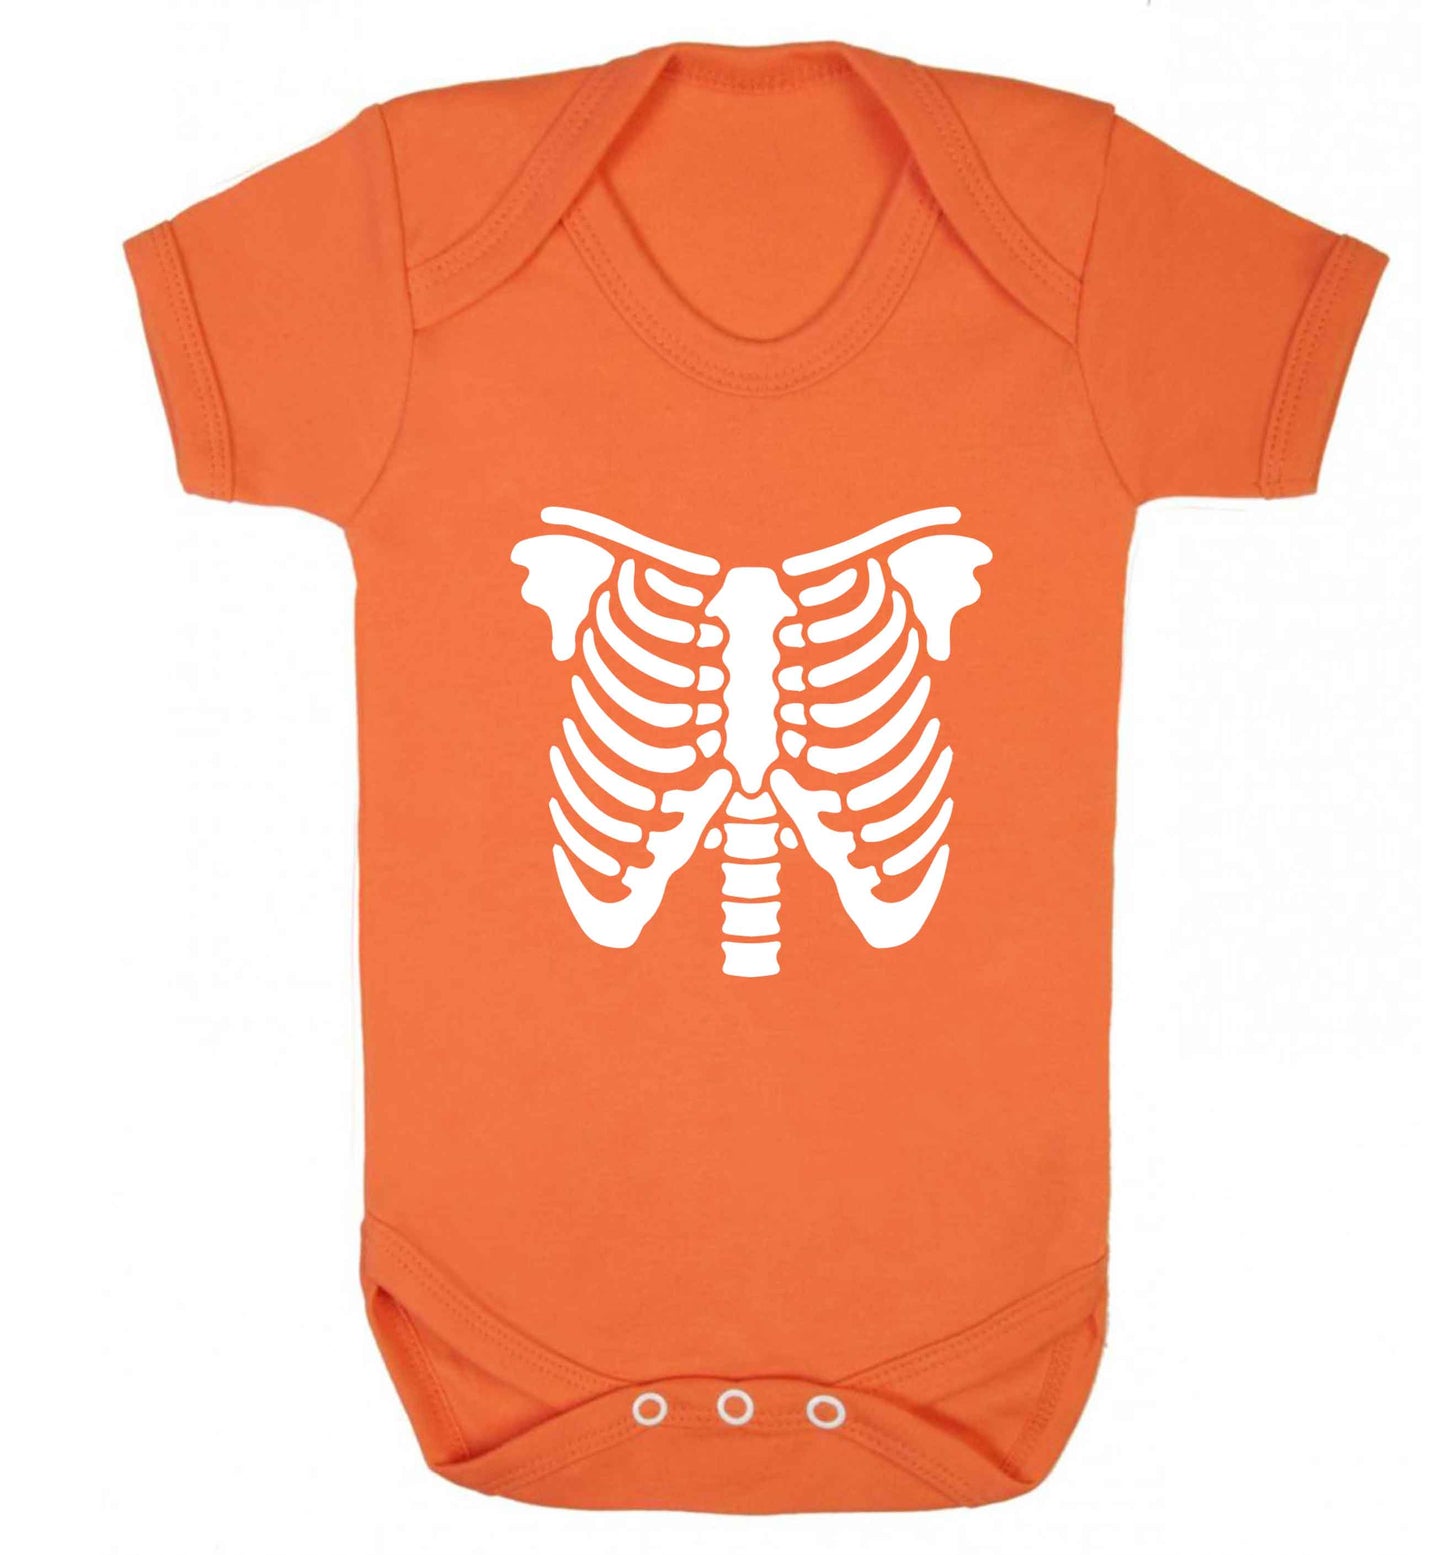 Skeleton ribcage baby vest orange 18-24 months